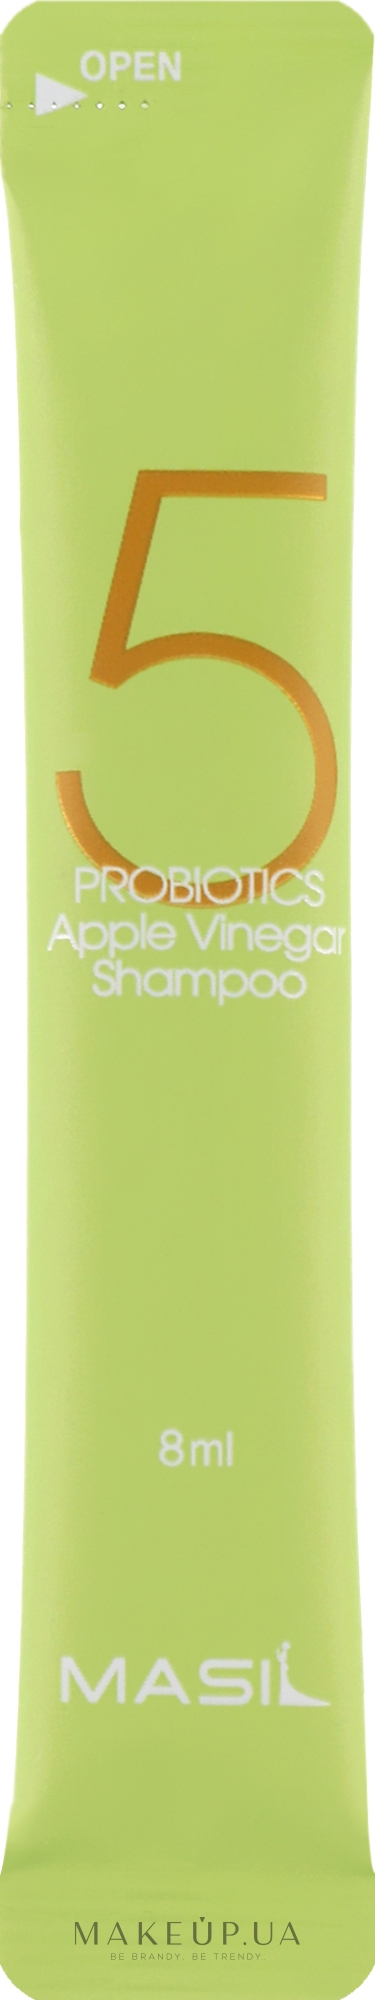 Мягкий безсульфатный шампунь с проботиками и яблочным уксусом - Masil 5 Probiotics Apple Vinegar Shampoo (пробник) — фото 8ml